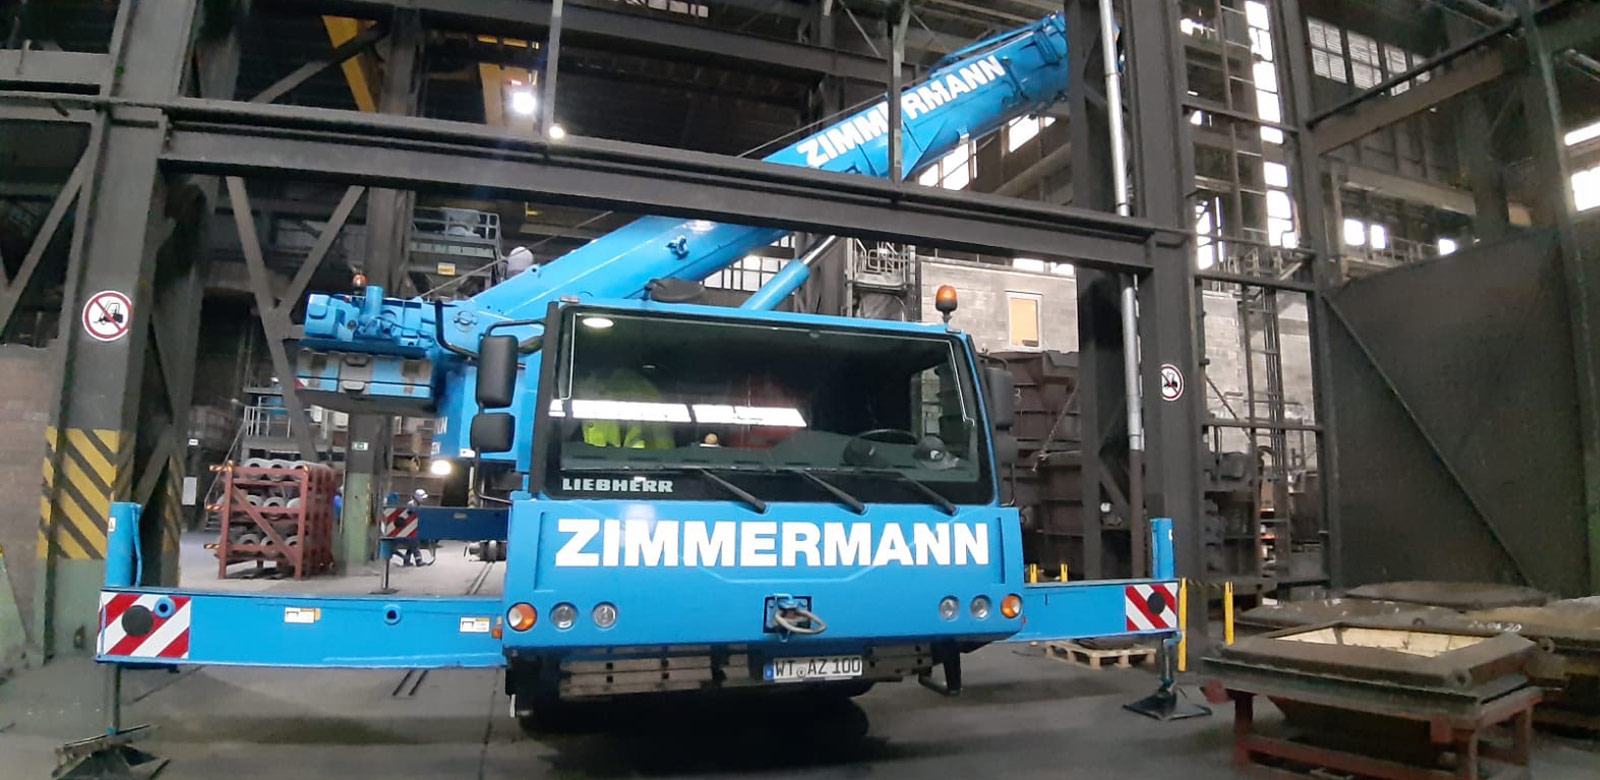 ZIMMERMANN Autokrane GmbH & Co. KG in Bad Säckingen